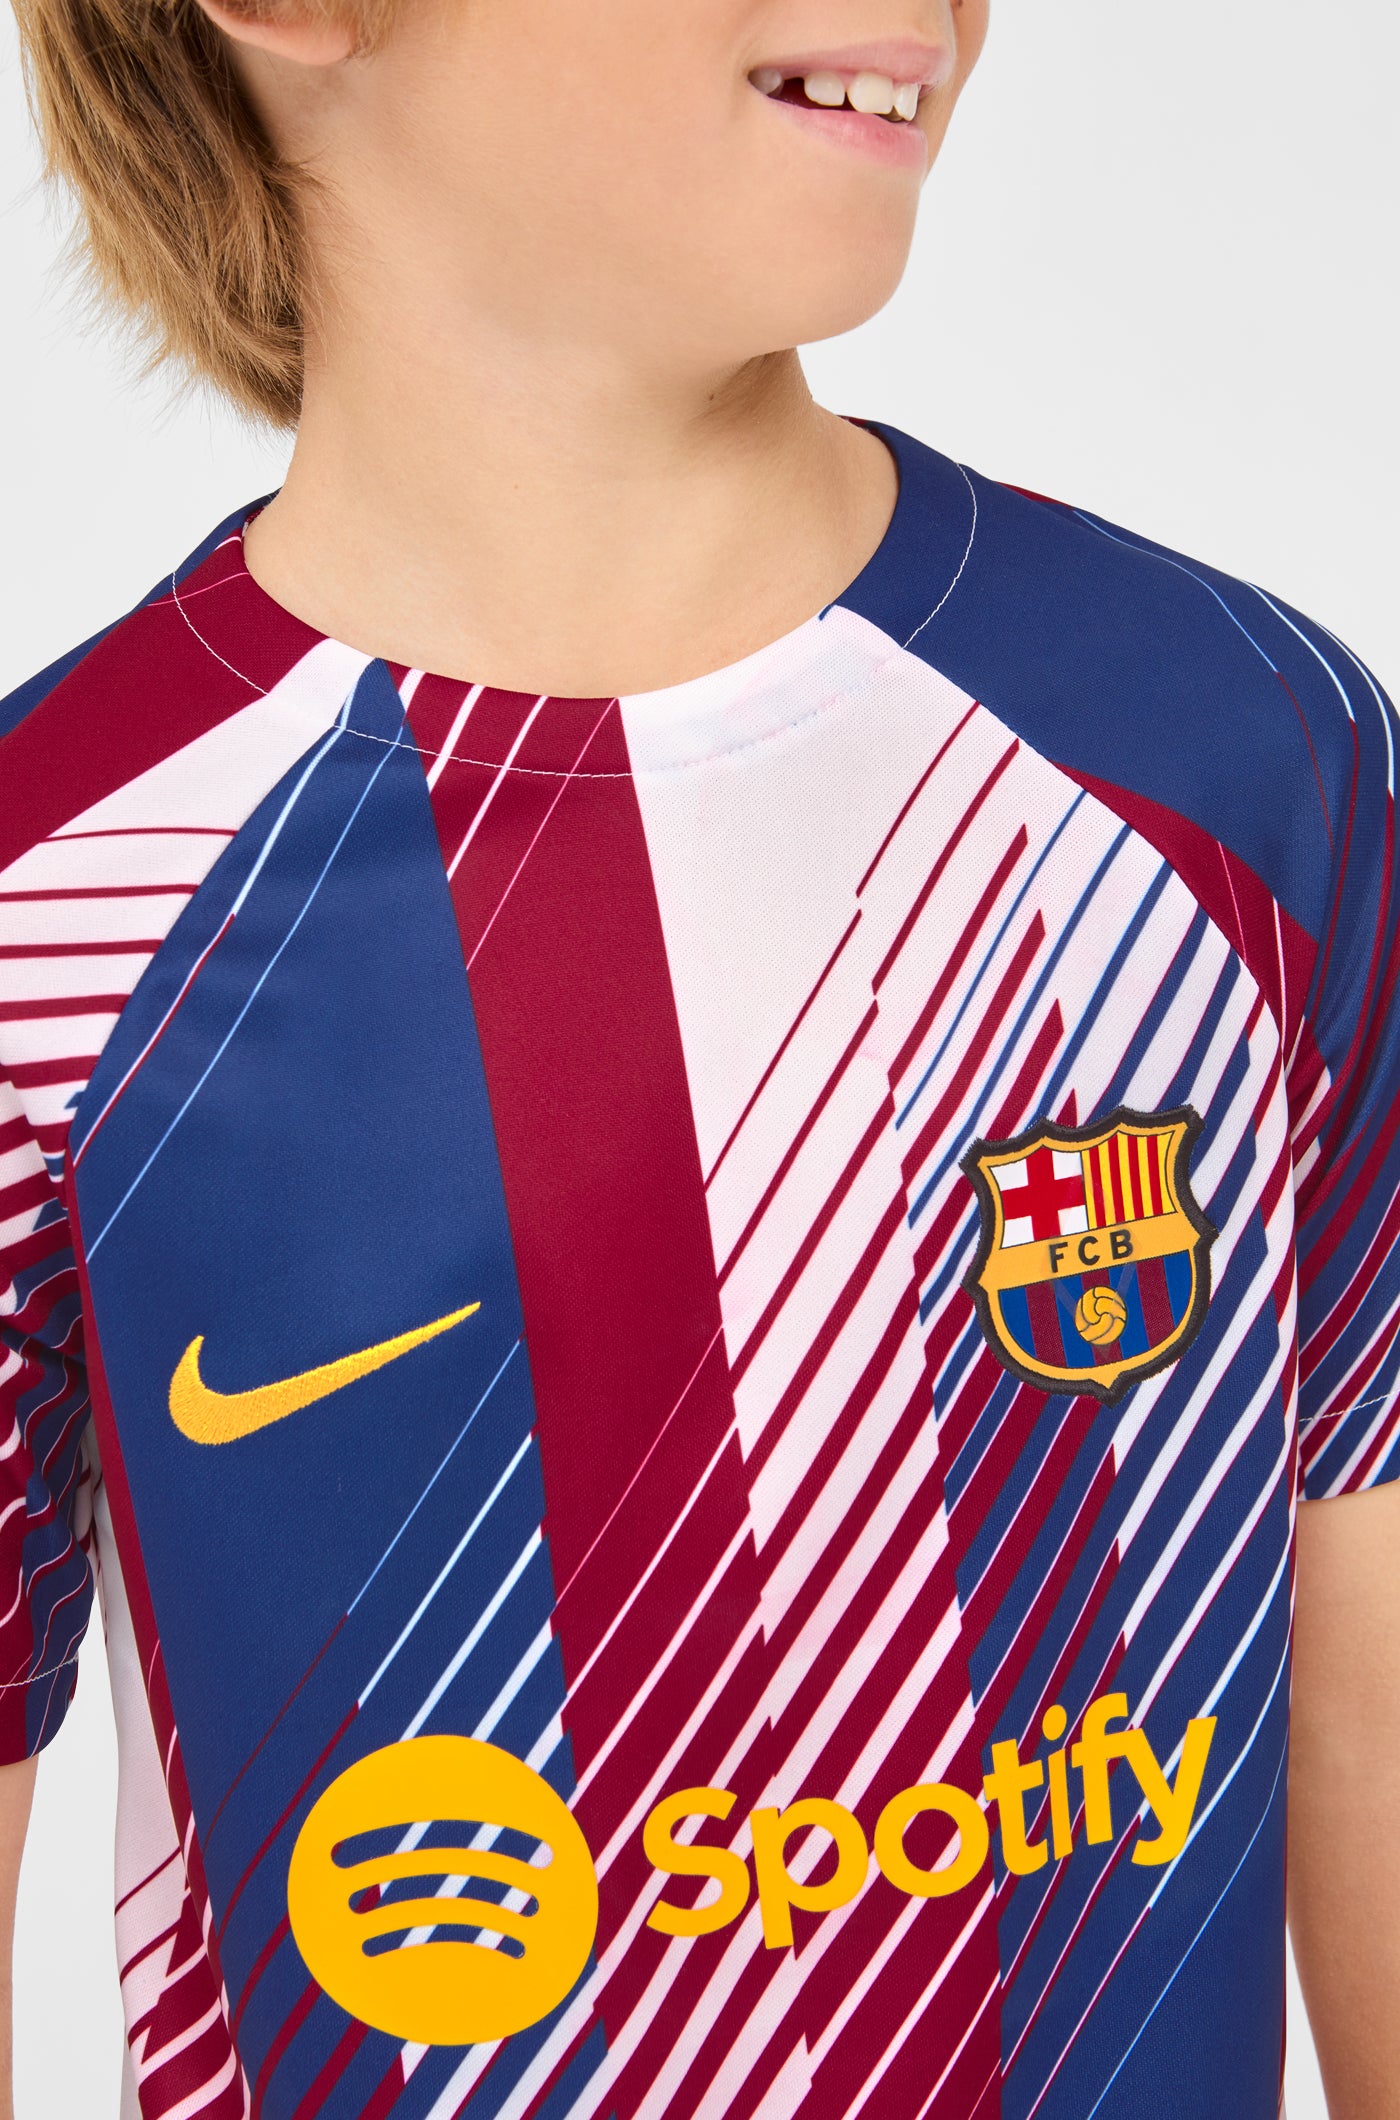 Samarreta prepartit primer equipament FC Barcelona 23/24 - LaLiga - Junior